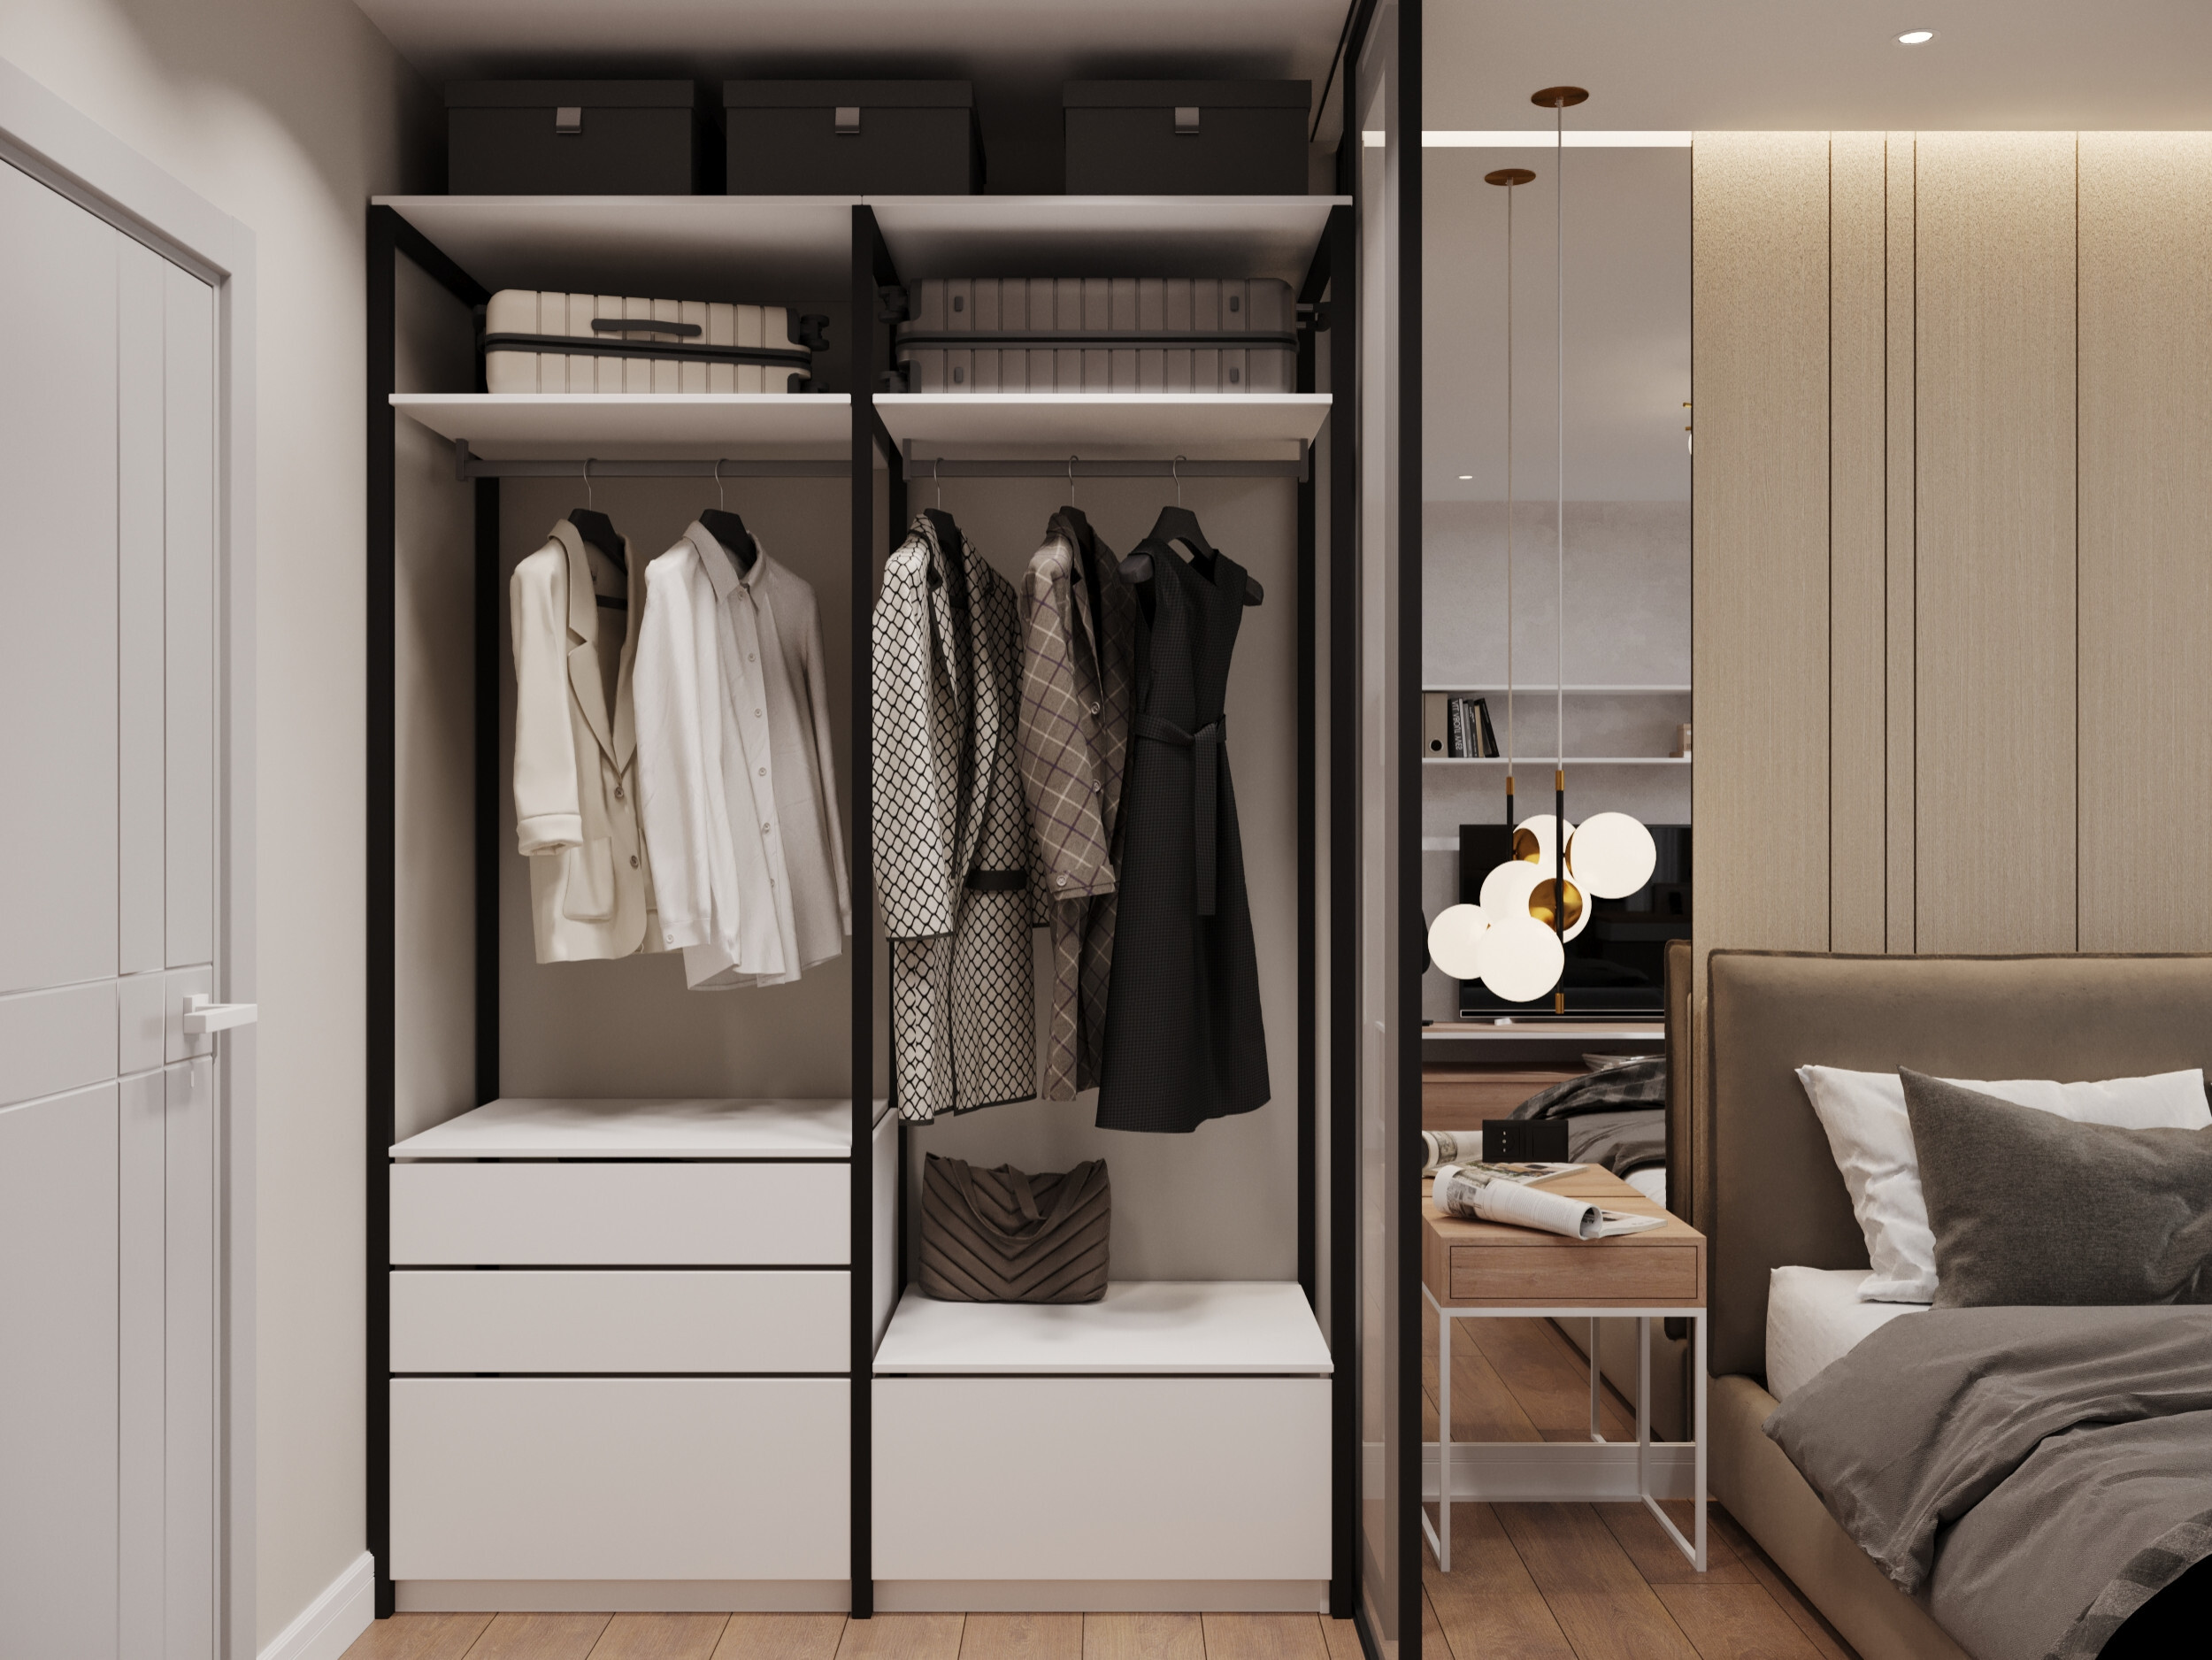 Интерьер гардеробной с гардеробной, кладовкой, гардеробной зой кроватью, шкафом над кроватью, шкафом у кровати и хранением верхней одежды в современном стиле